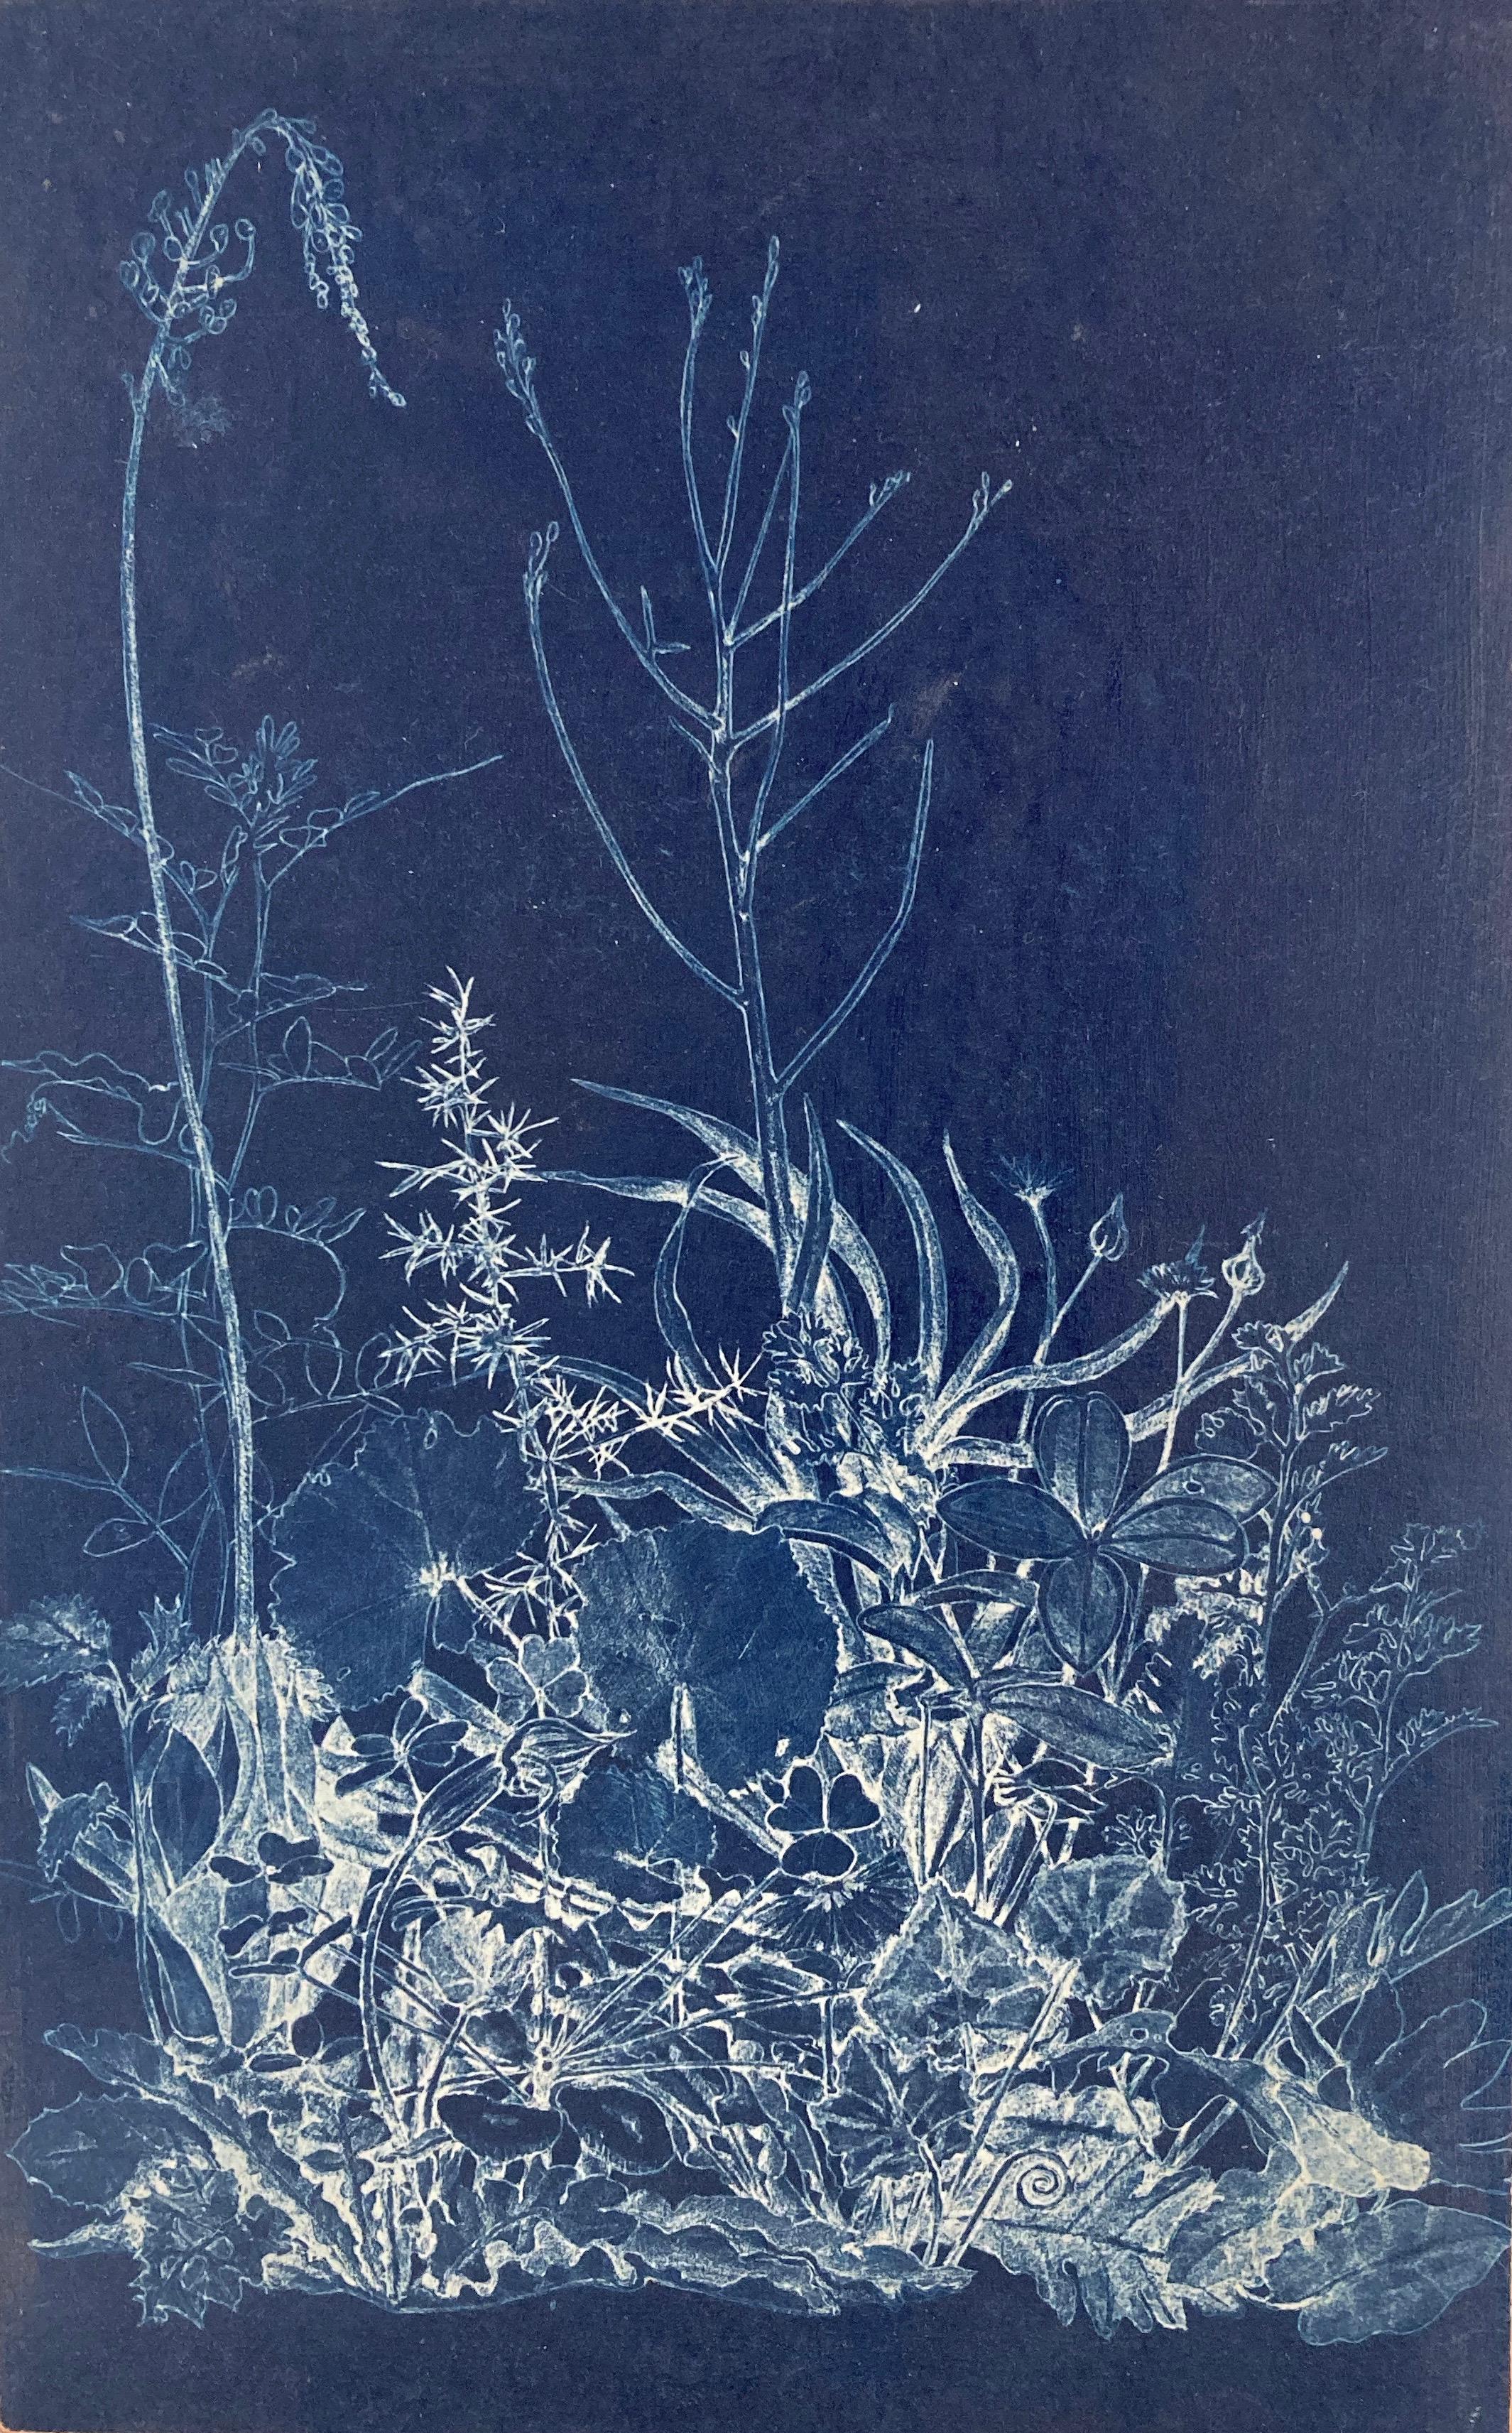 Landscape Print Judith Allen-Efstathiou - Étude de fleur photographique réaliste et abstraite en bleu/blanc « Mapping the Walk »